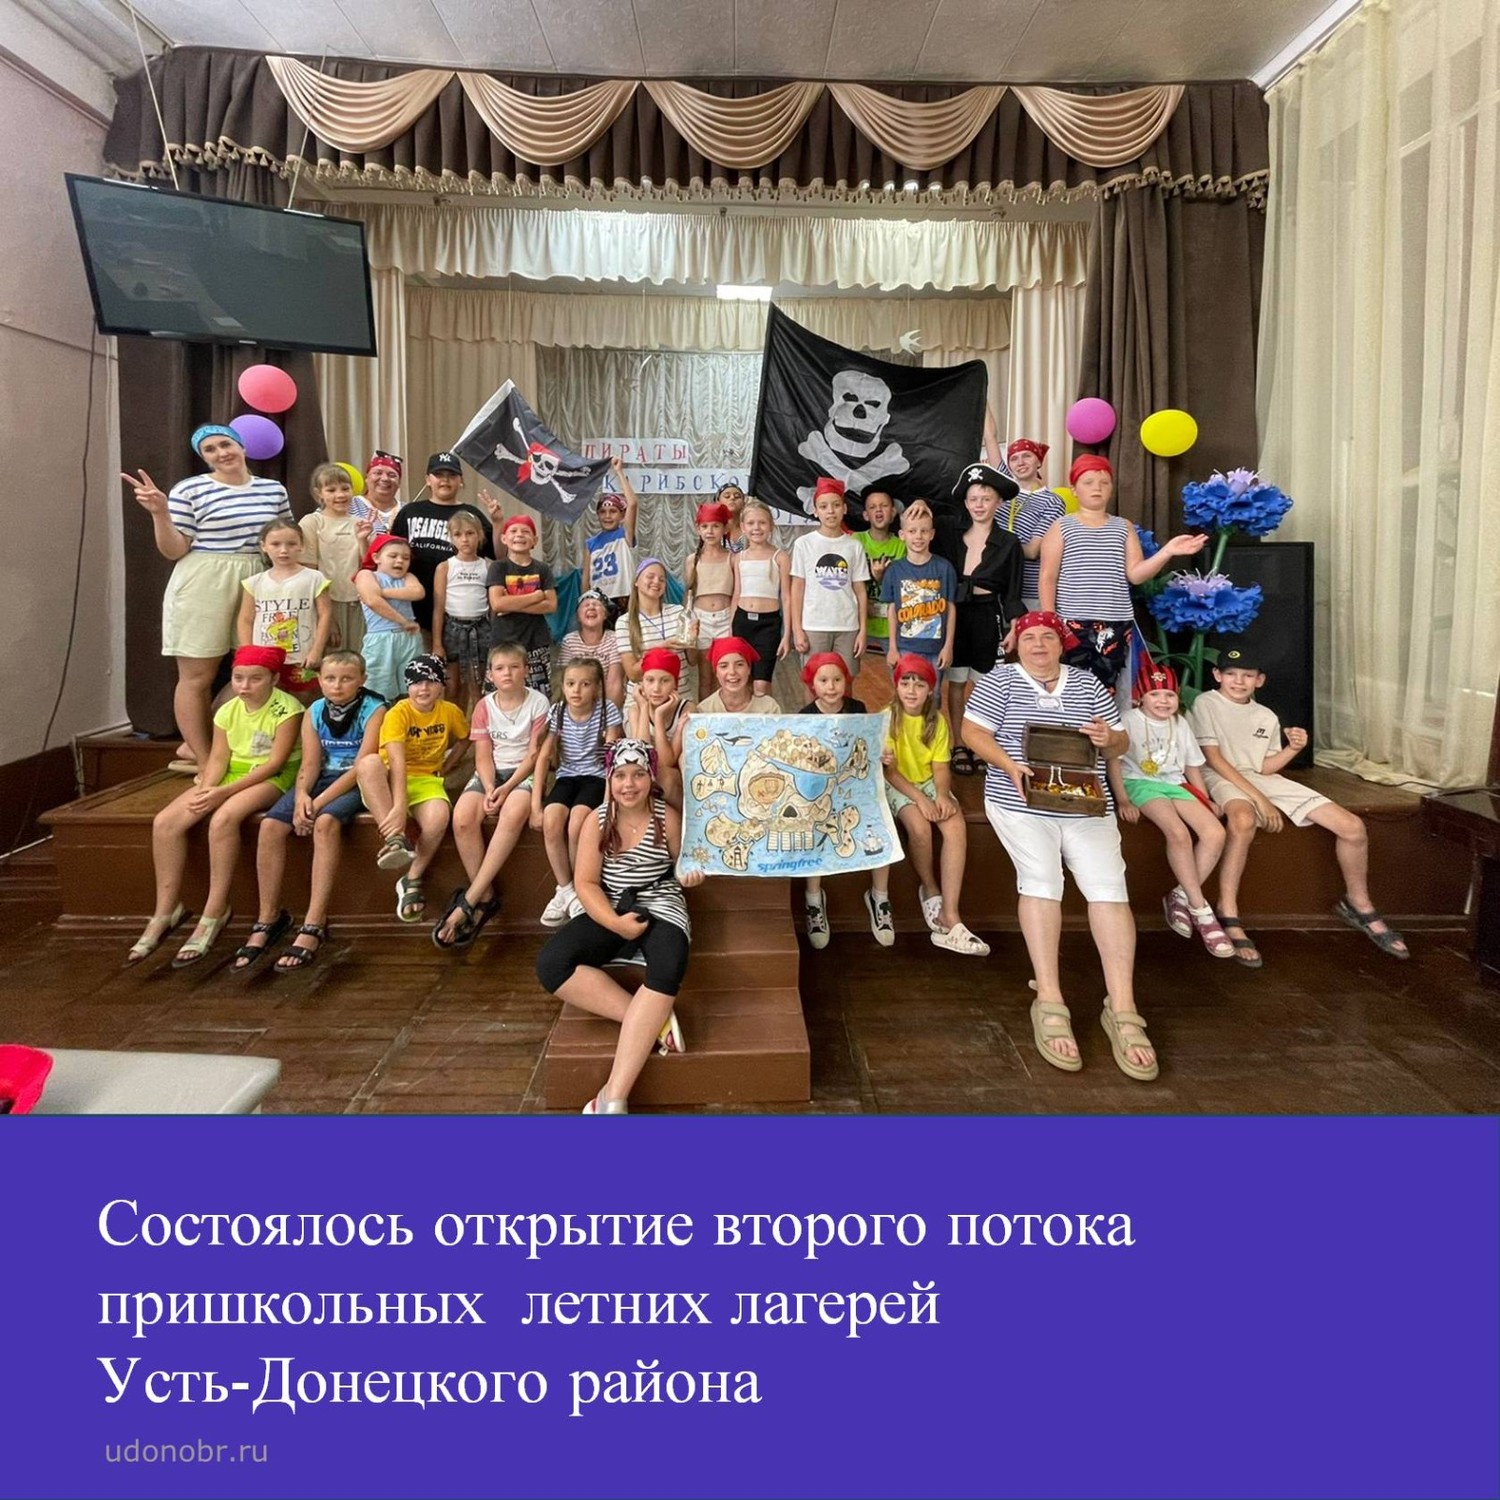 Состоялось открытие второго потока пришкольных летних лагерей Усть-Донецкого района